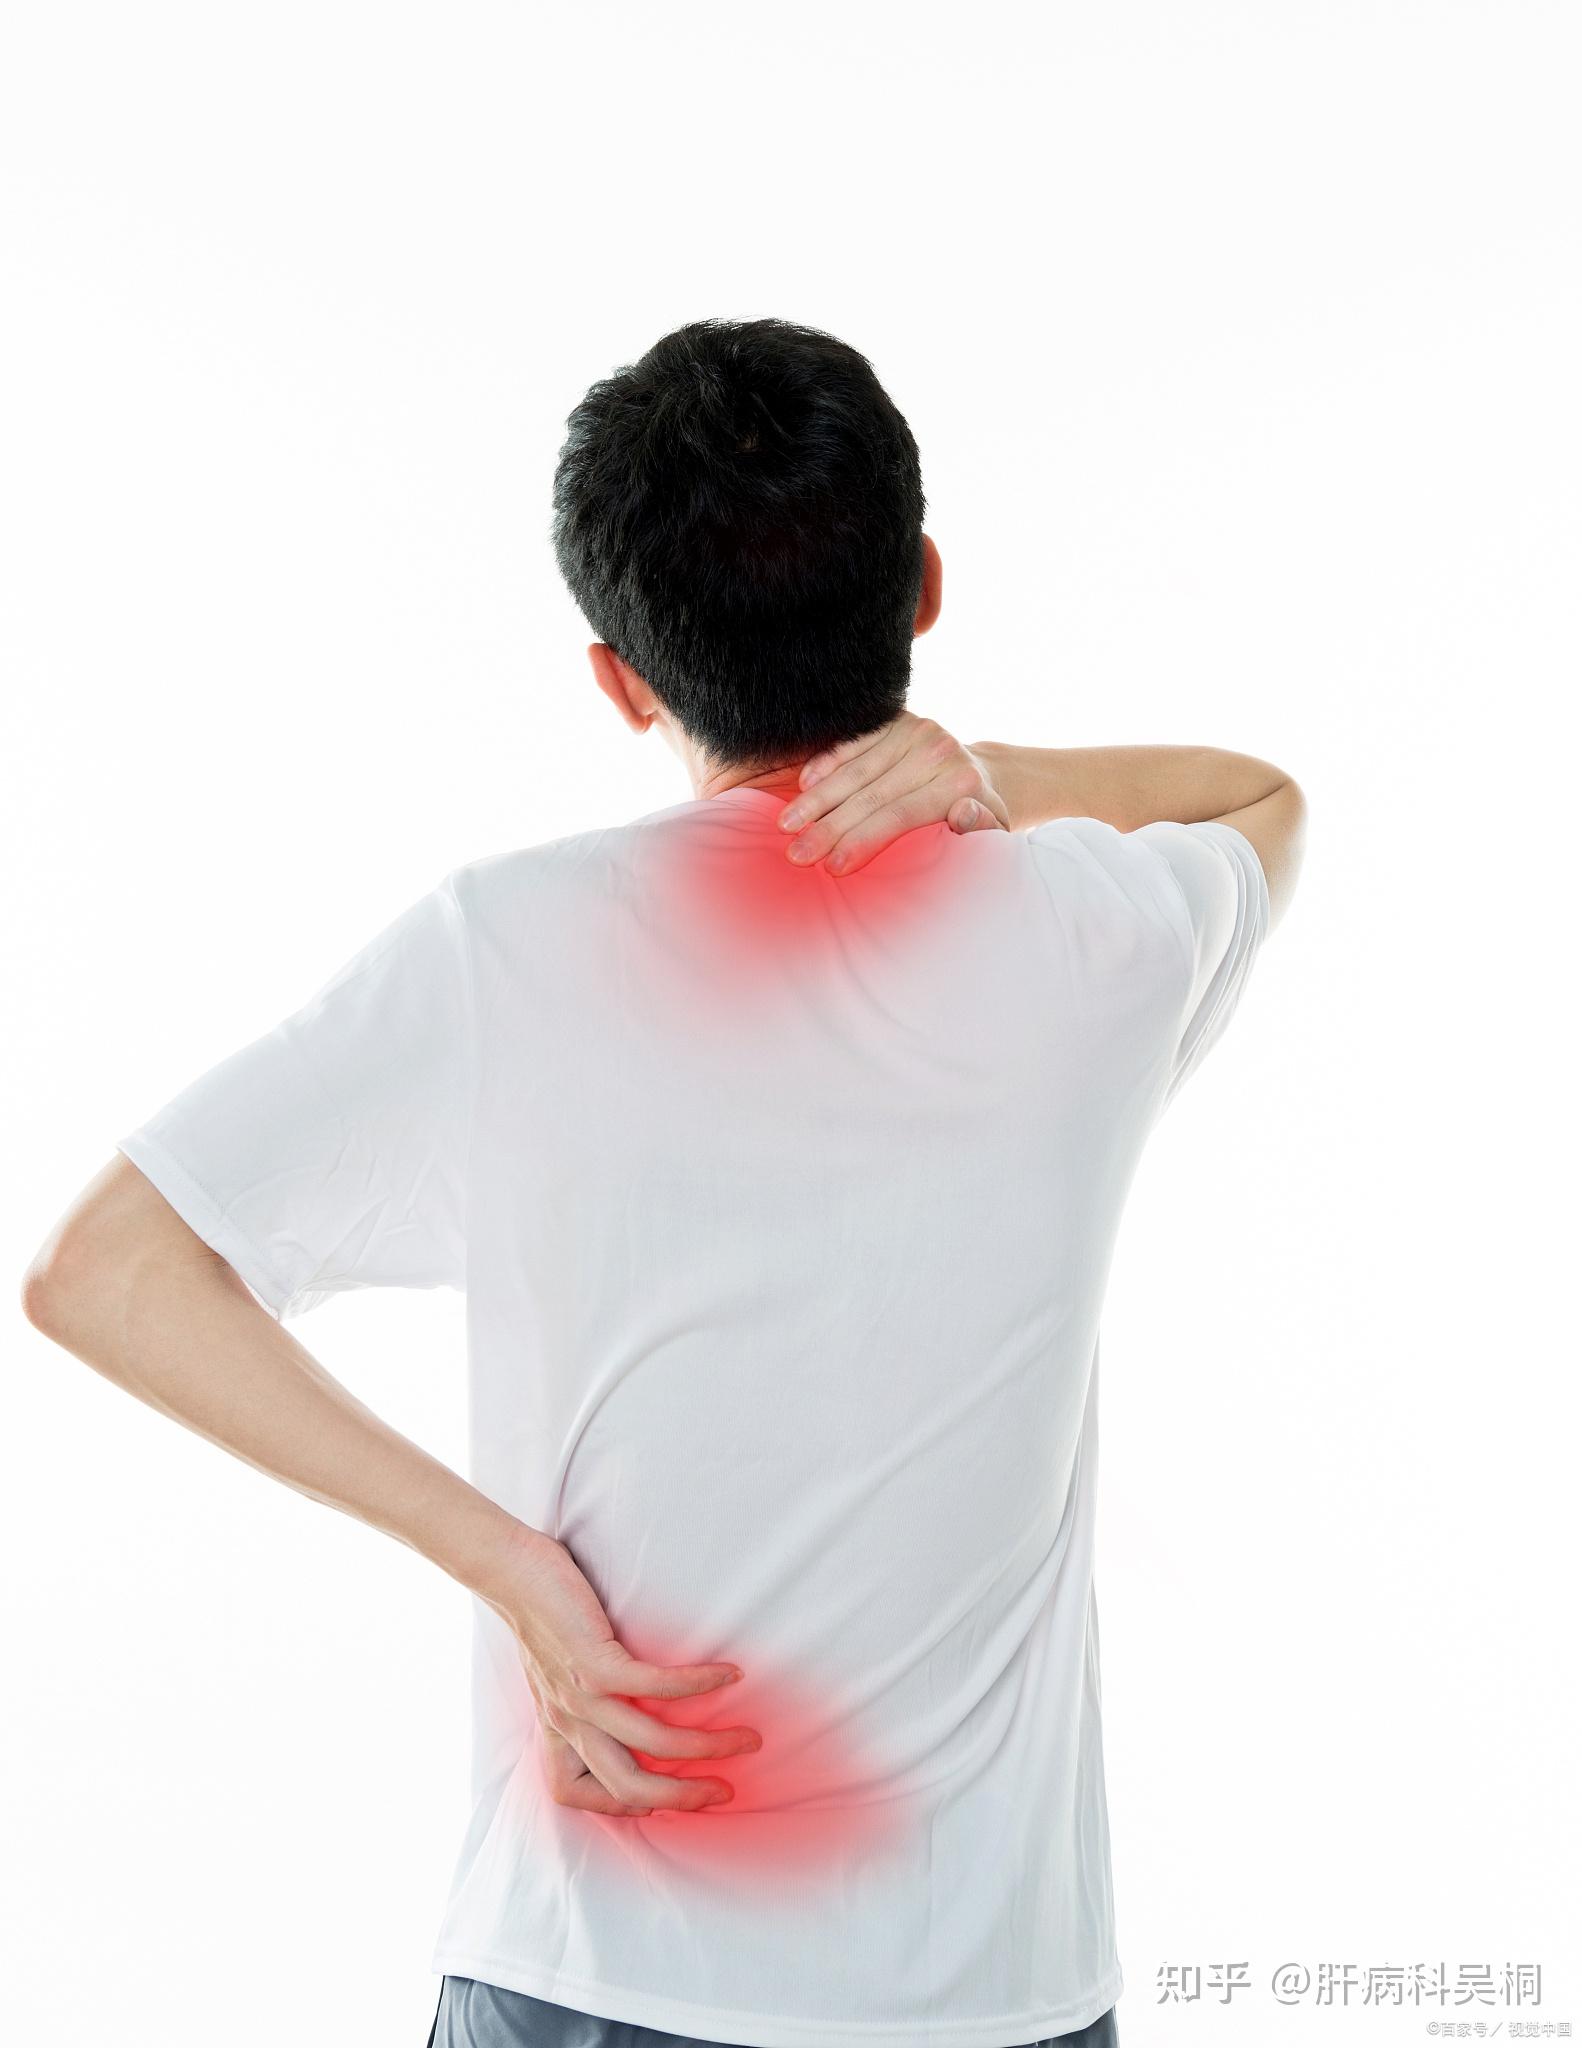 肩膀疼一定是肌肉劳损吗?右肩痛有可能是脏腑问题导致的,一定要分清楚